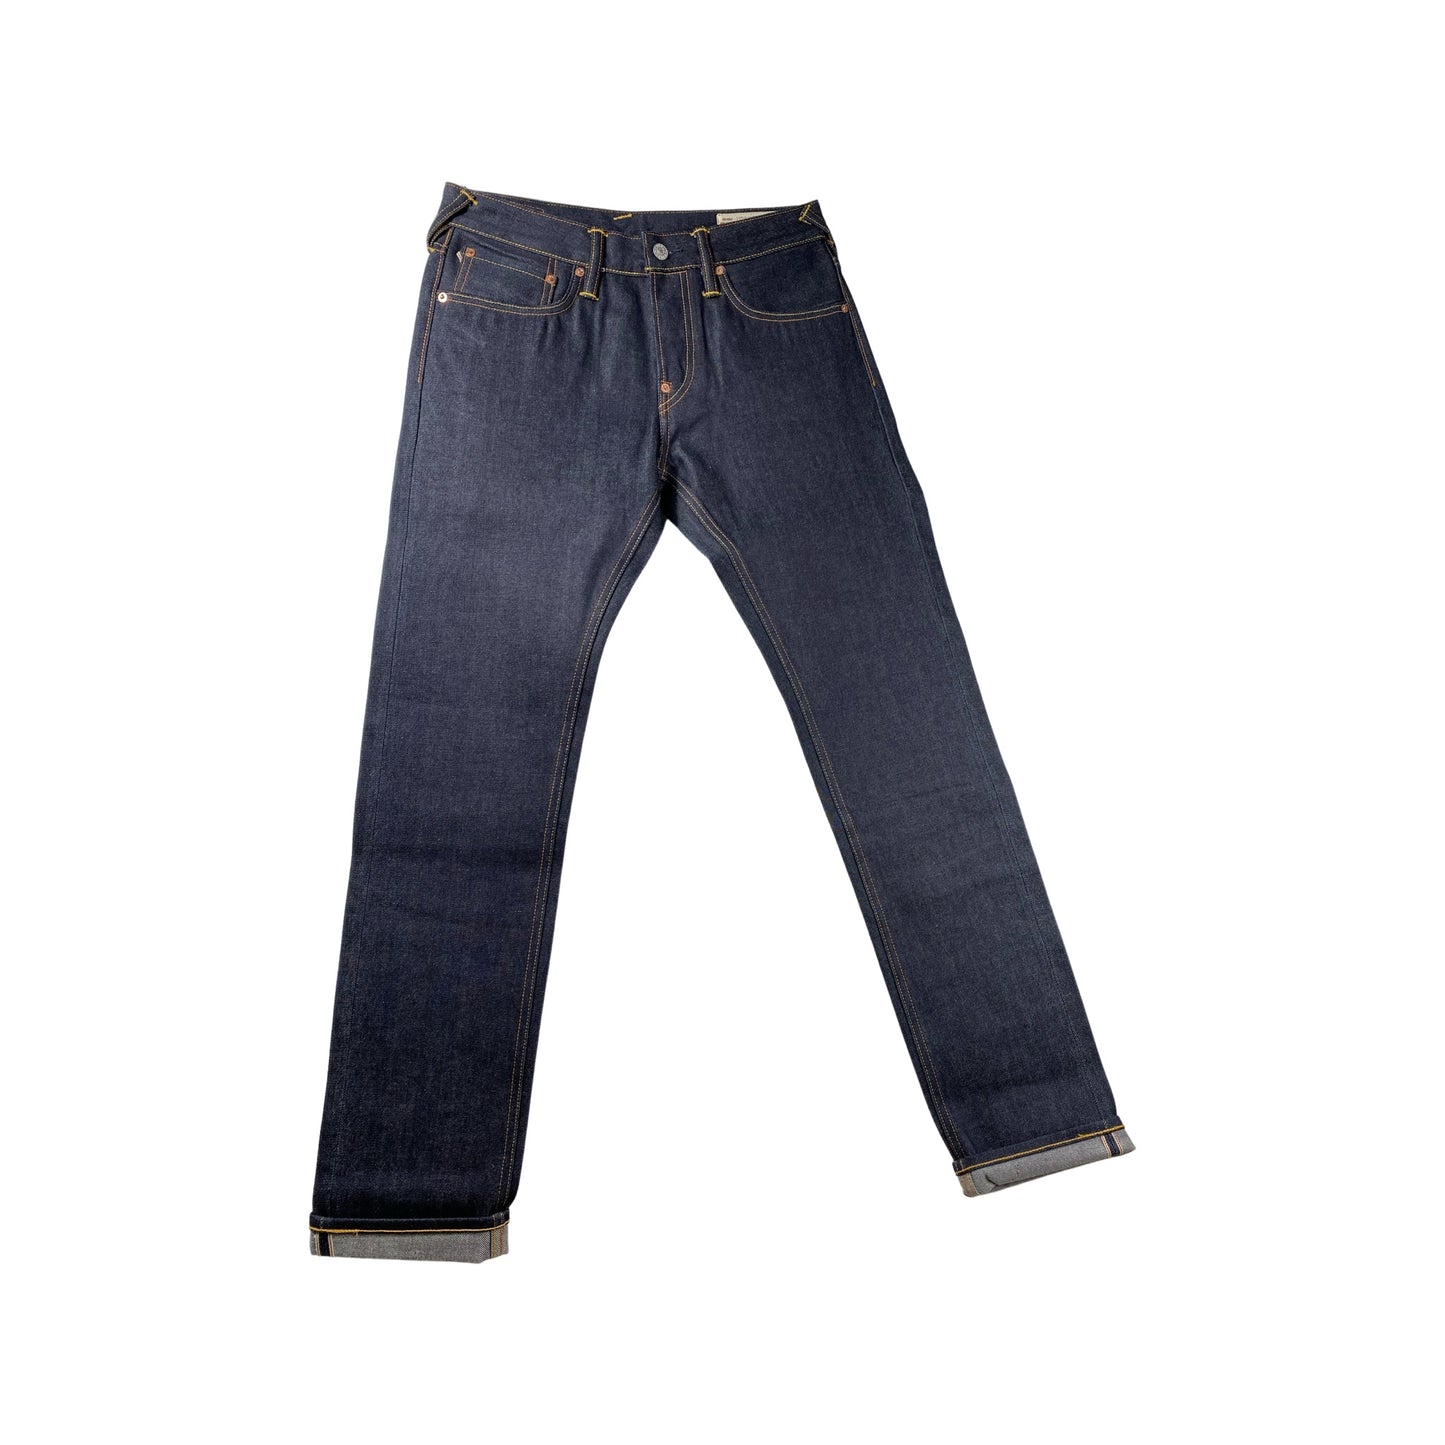 Evisu Hose Jeans "HT Jeans, 2010, BLUEICHIBAN Pt & APP SEAGULL" -INDX